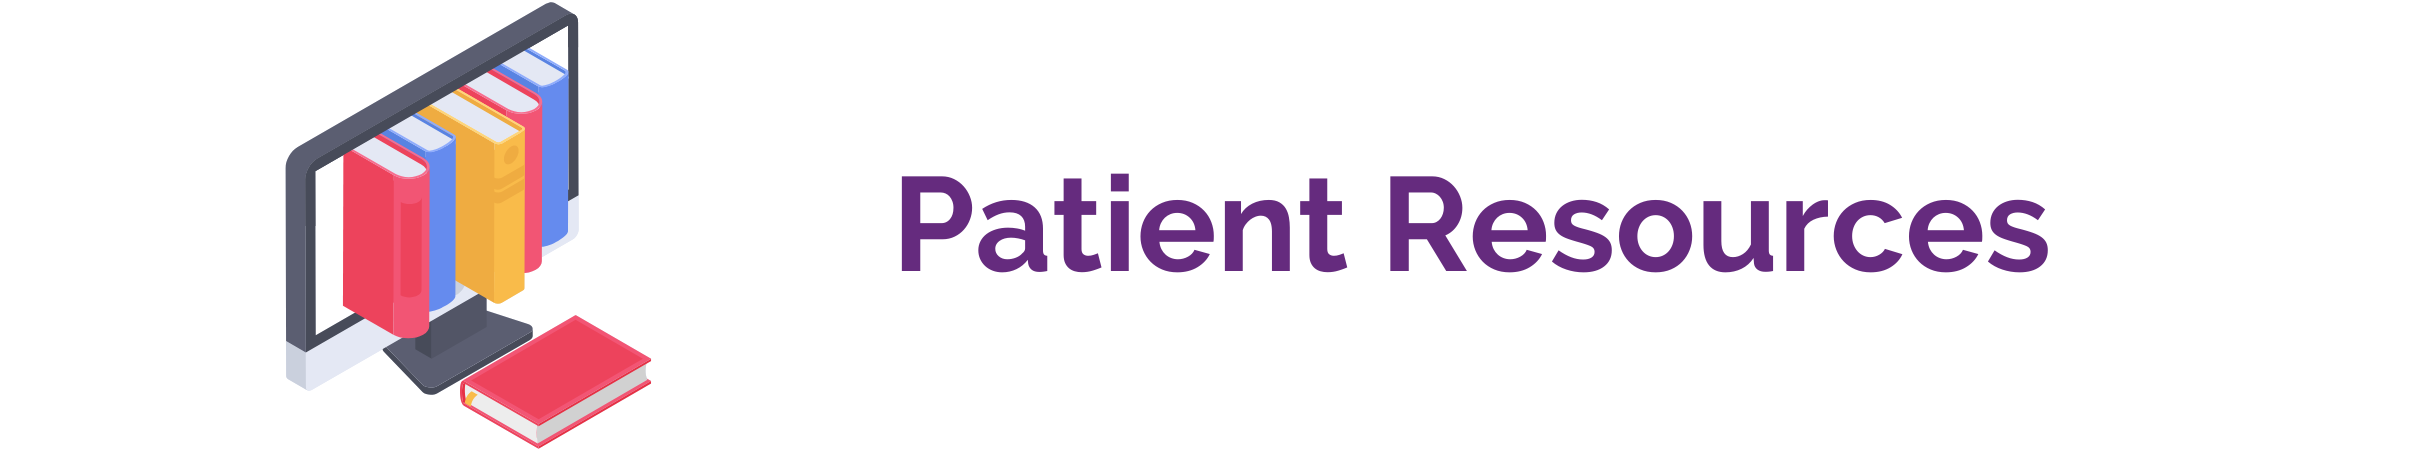 Patient resources banner